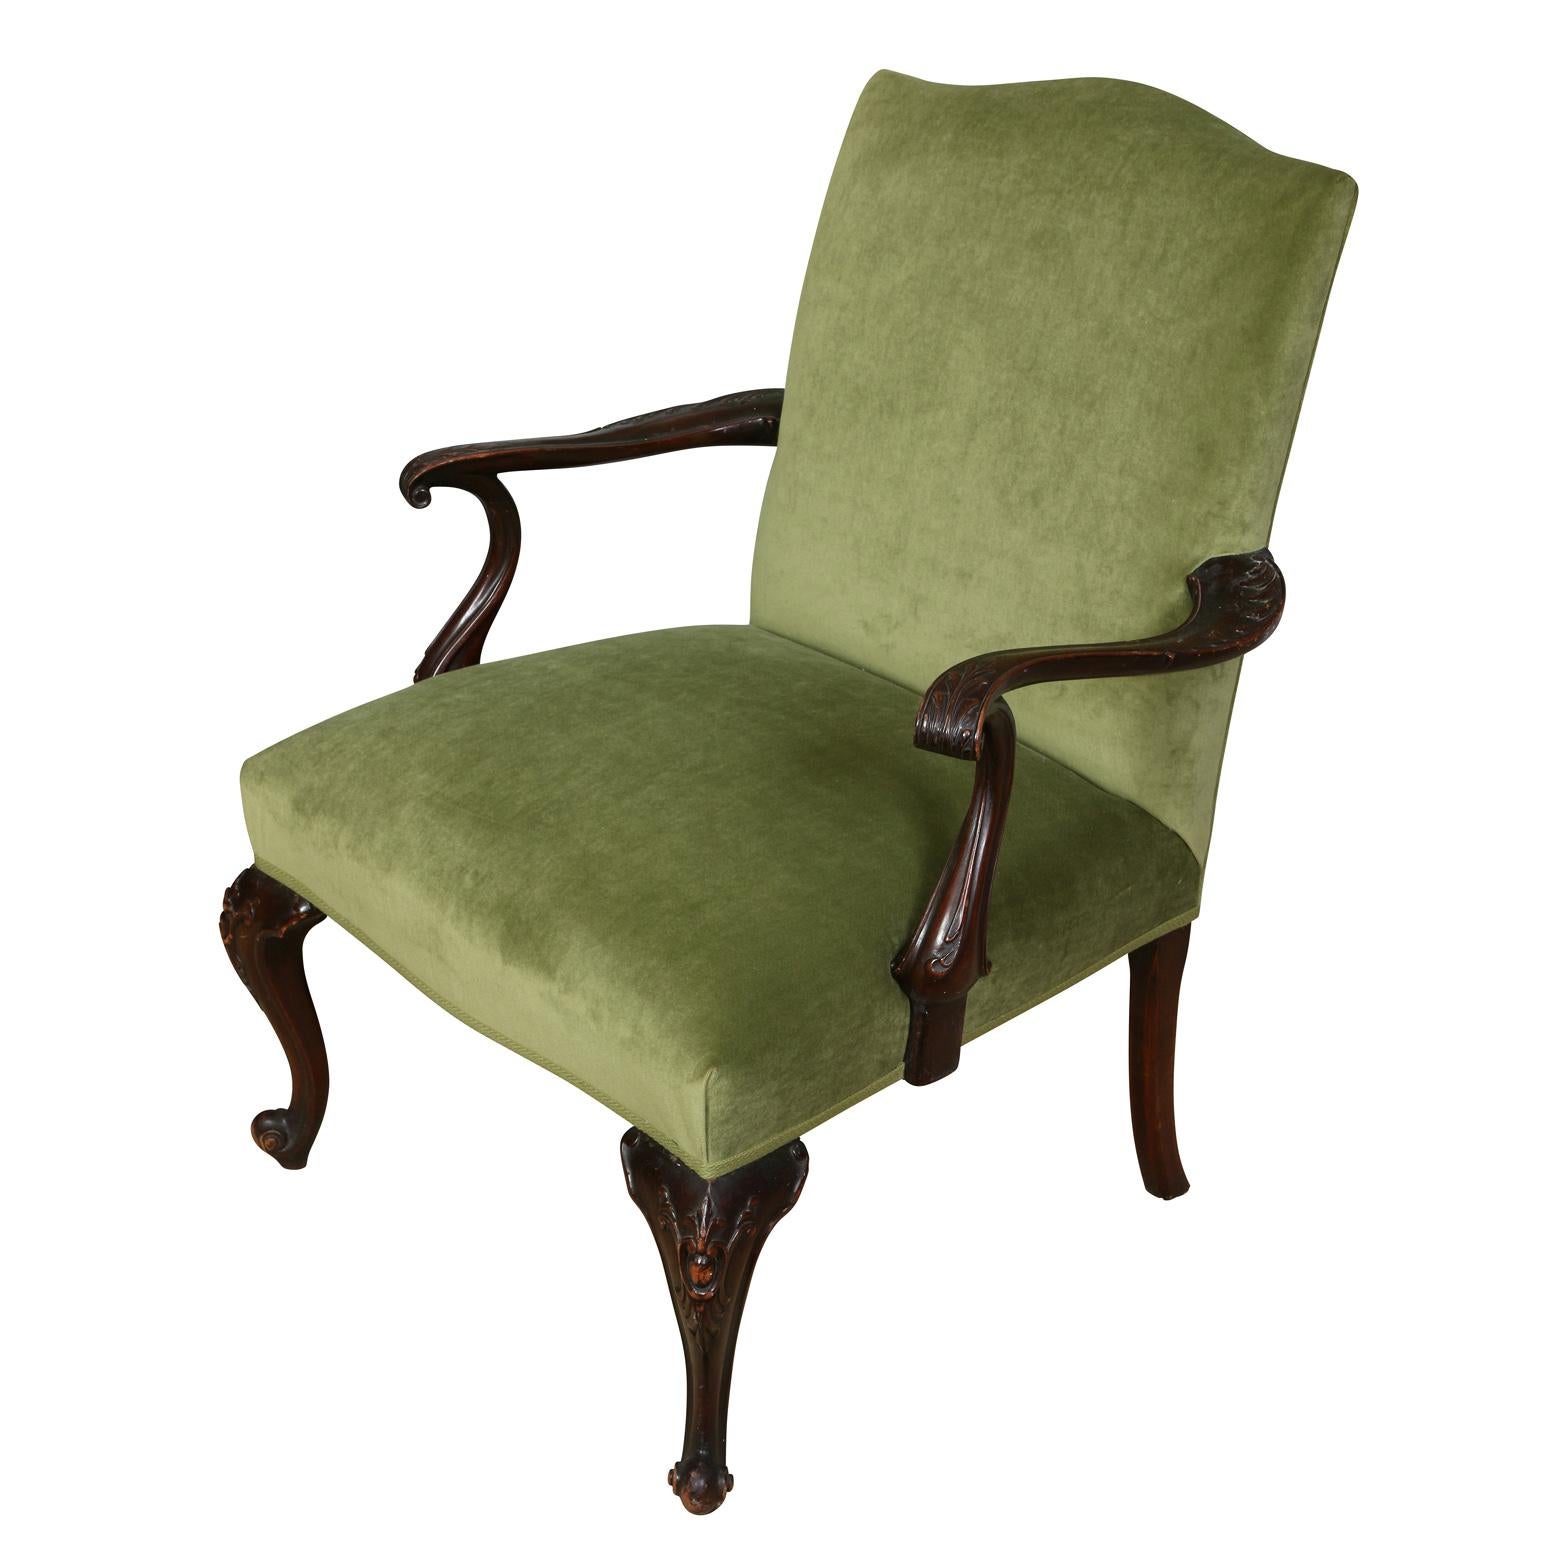 Chaise vintage de style Chippendale nouvellement tapissée d'un riche velours vert, avec des bras en volute sculptés et courbés et des pieds cabriole.